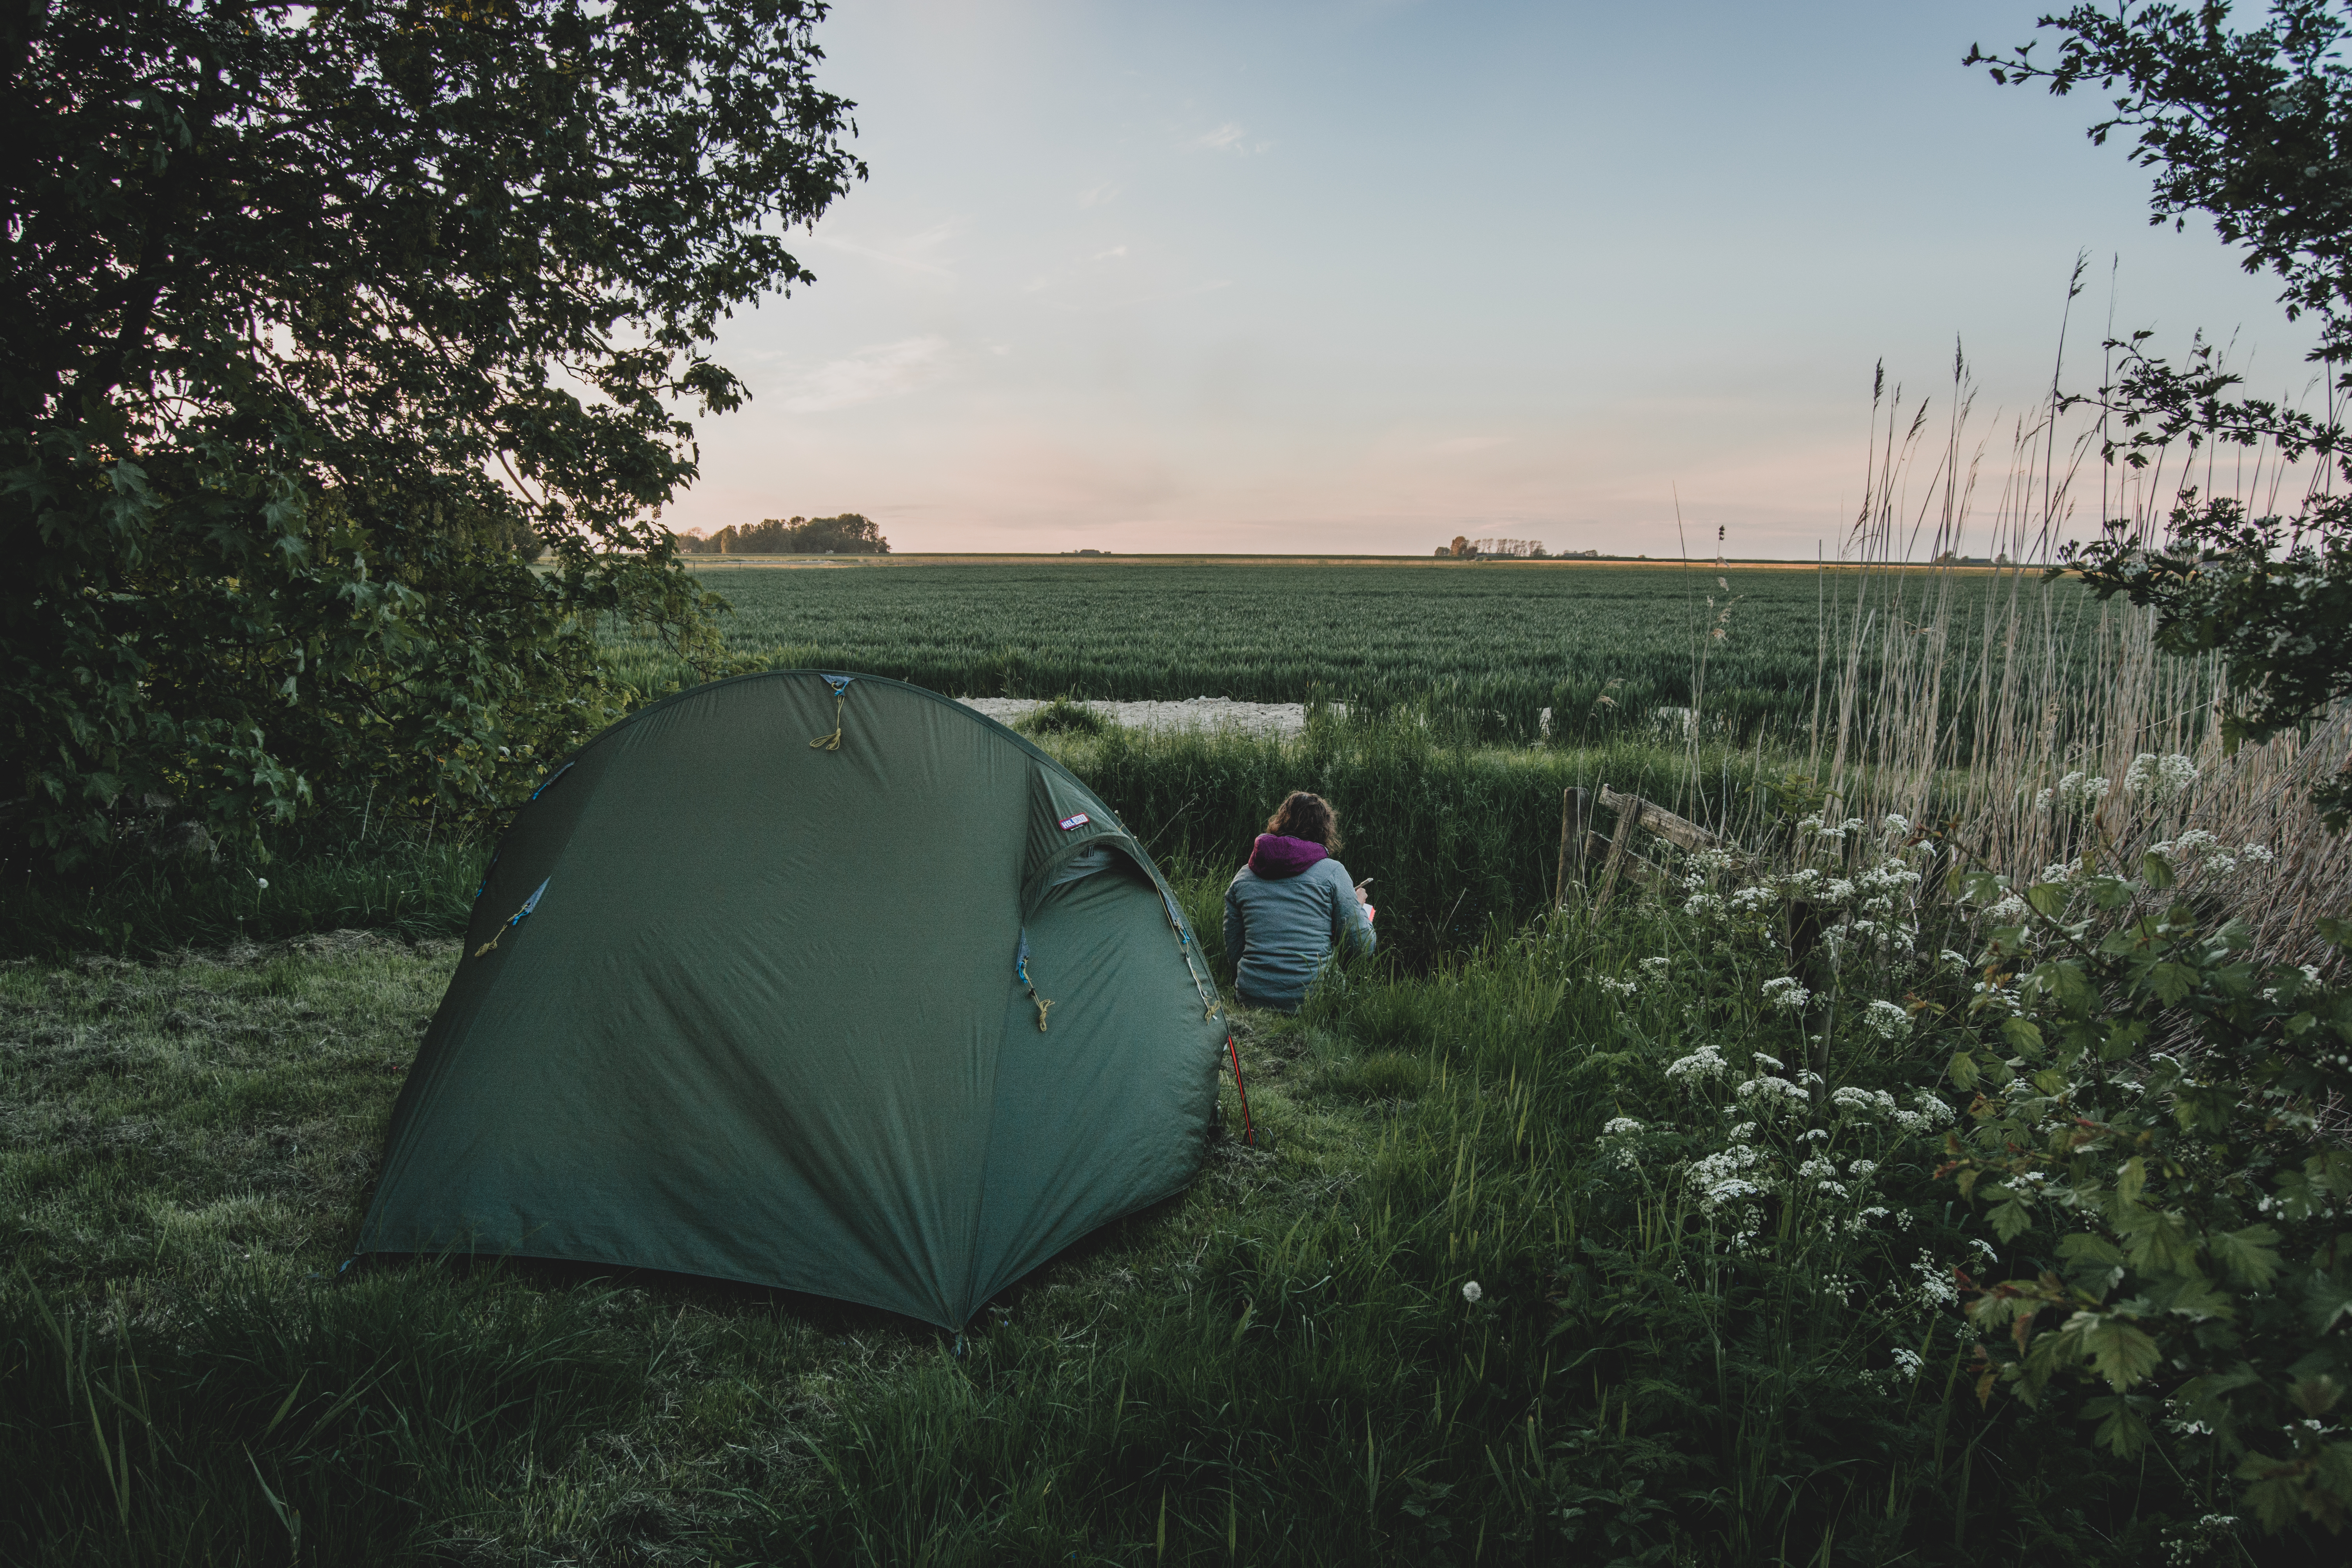 Kleine campings Nederland, zoals deze kleine camping in Groningen